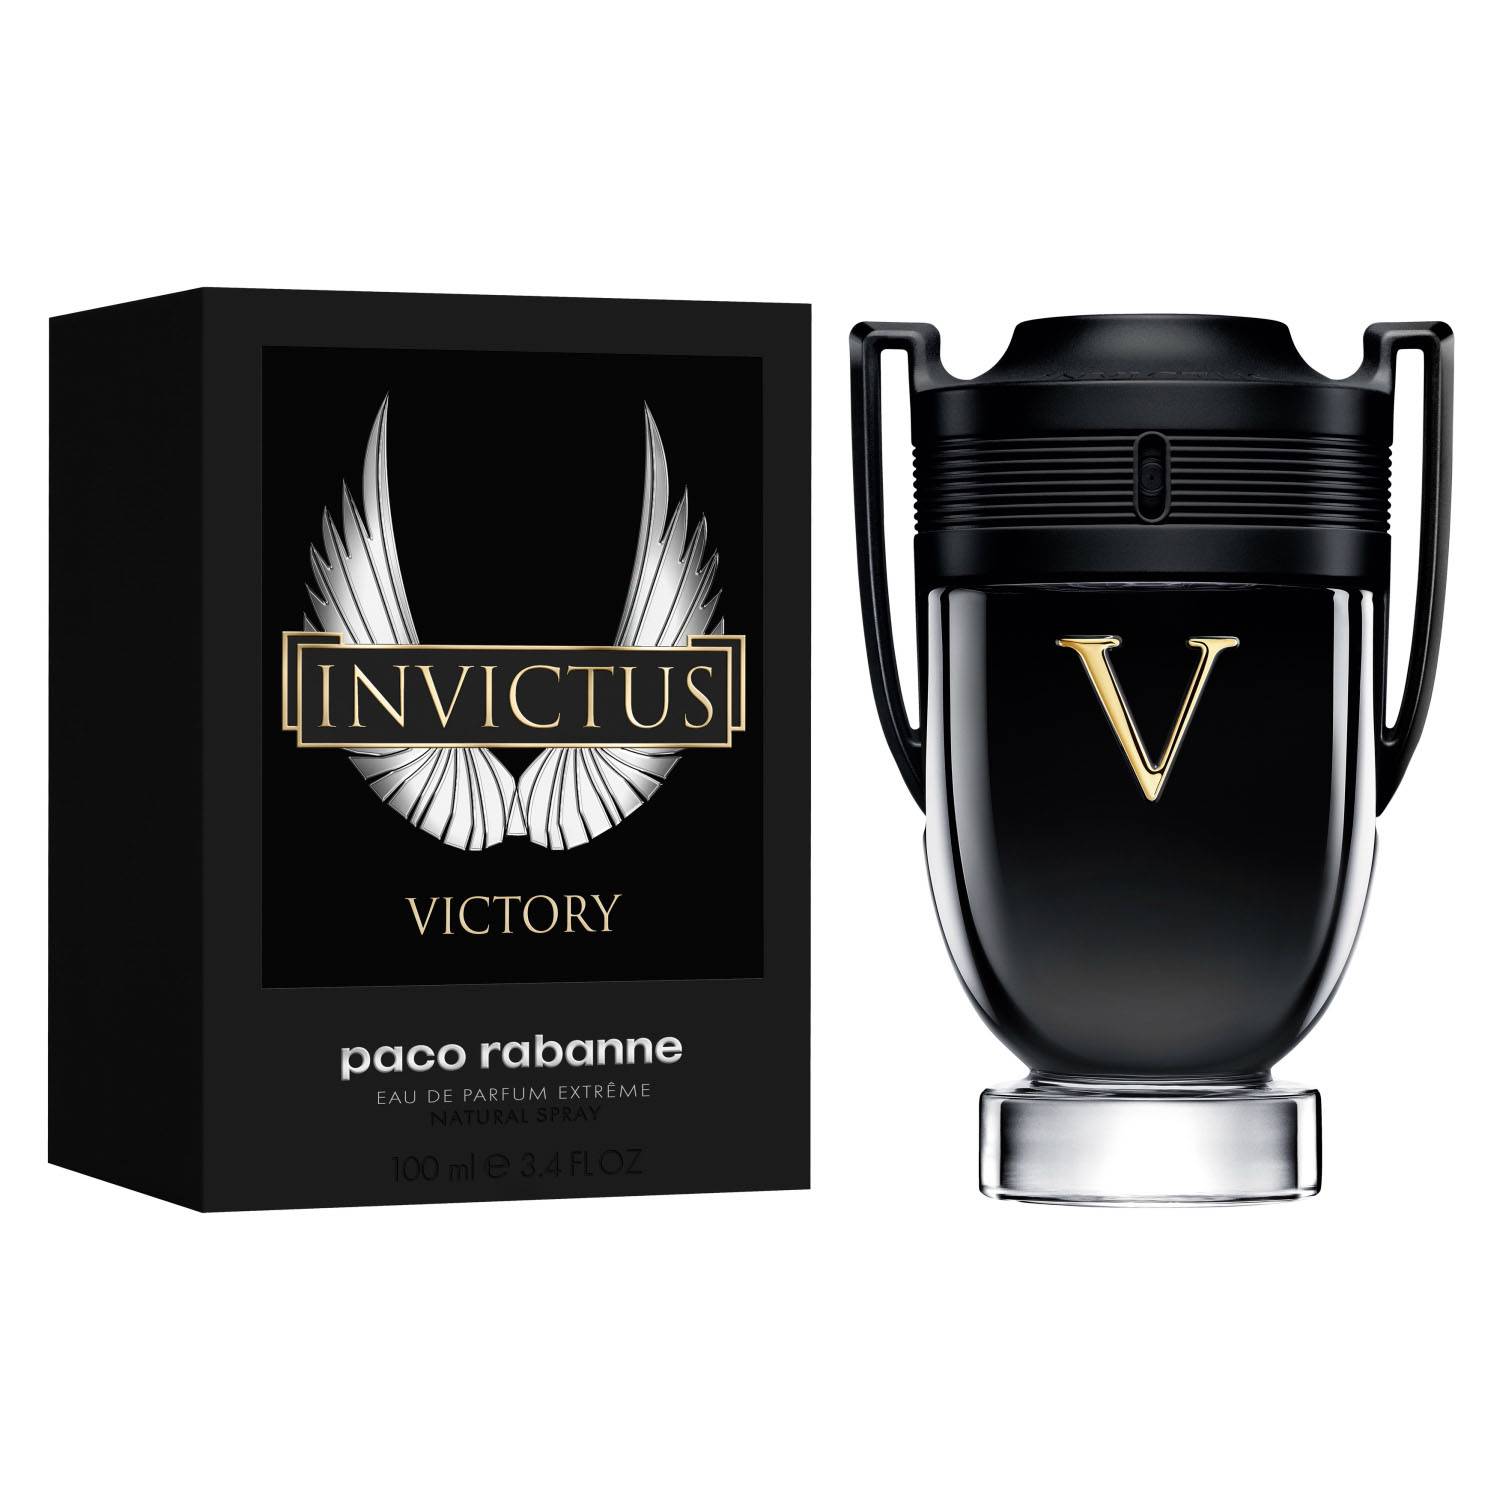 invictus-victory-faa301cf-0a52-4304-929e-99bab2f3b189.jpg